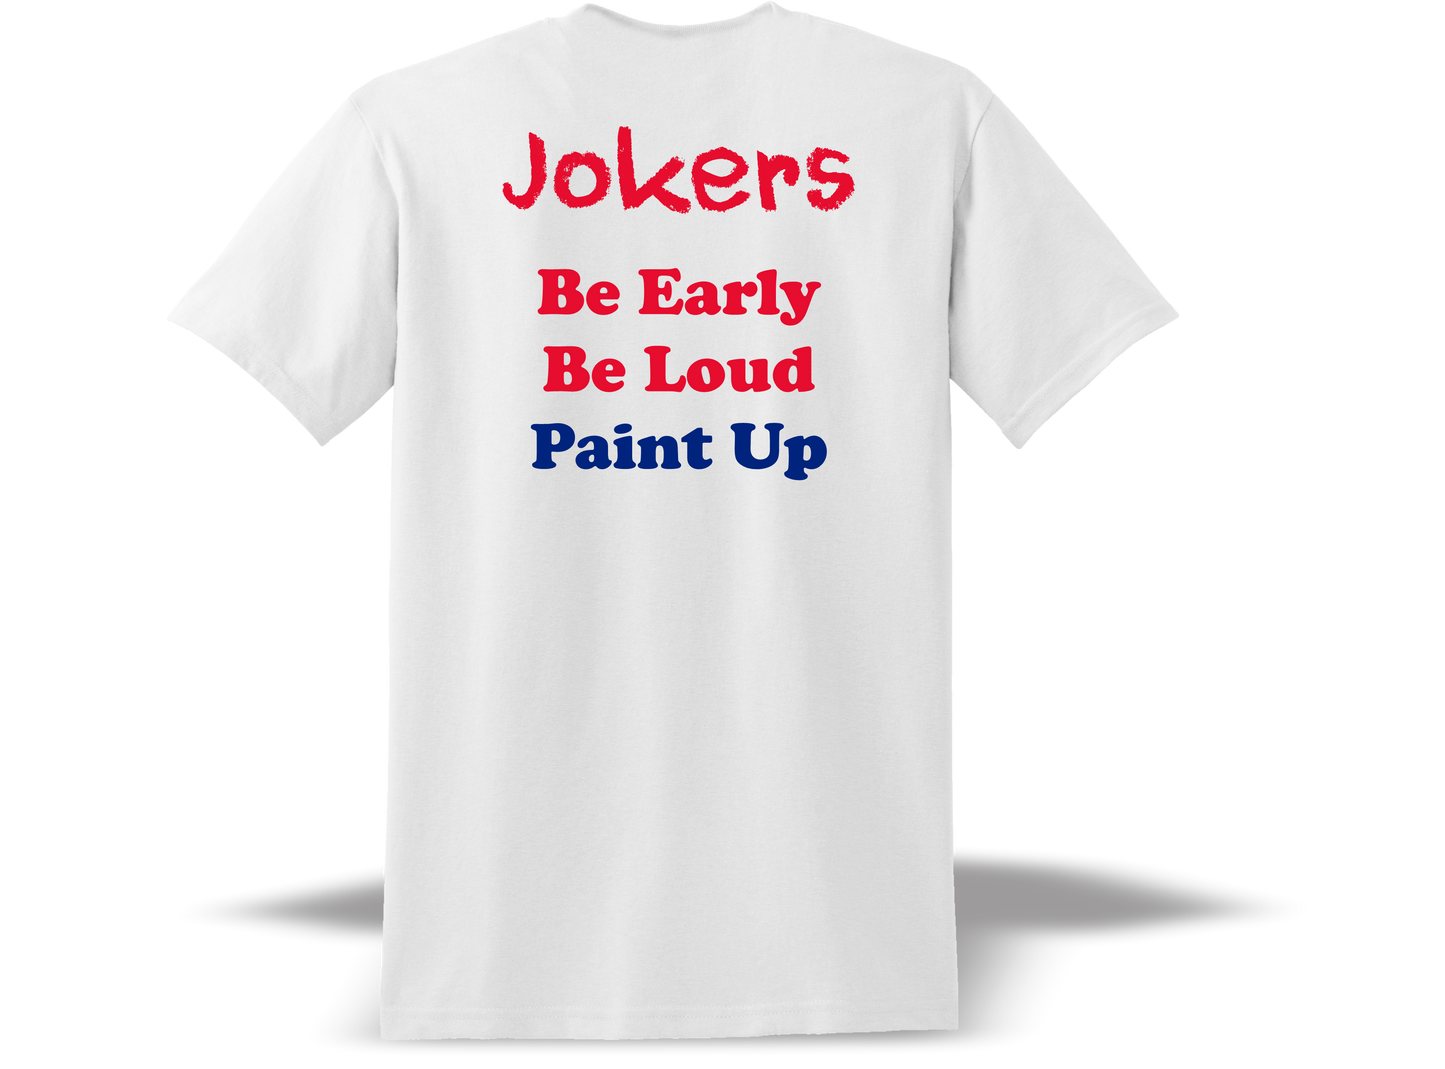 The Jokers Short Sleeve T-Shirt